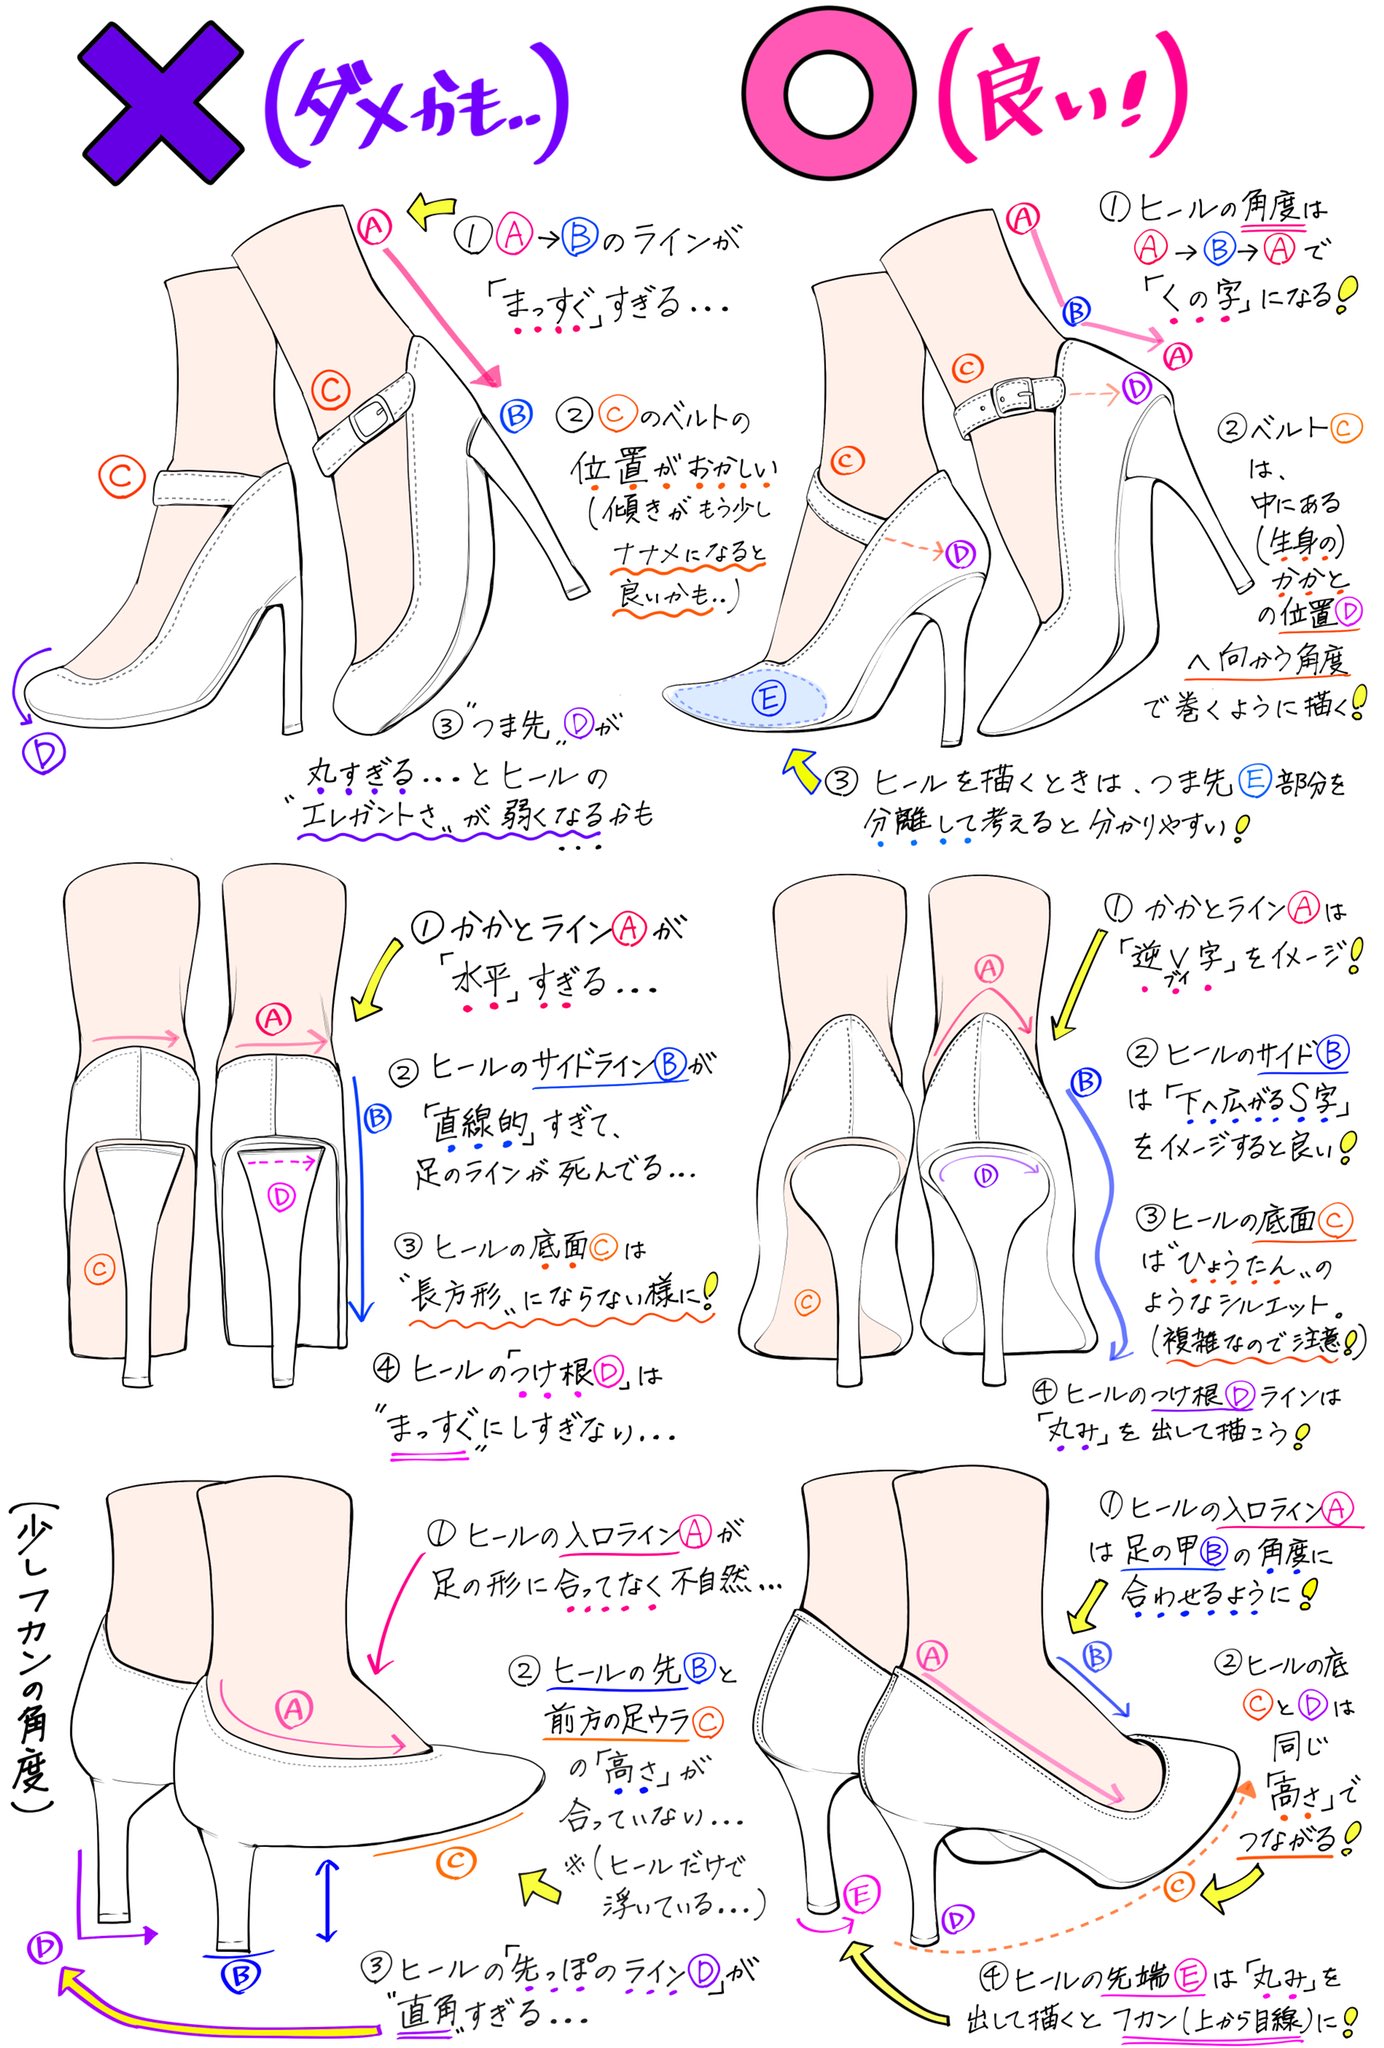 吉村拓也 イラスト講座 در توییتر ヒール靴の描き方 いろんな角度のヒールを描くときの ダメなこと と 良いこと